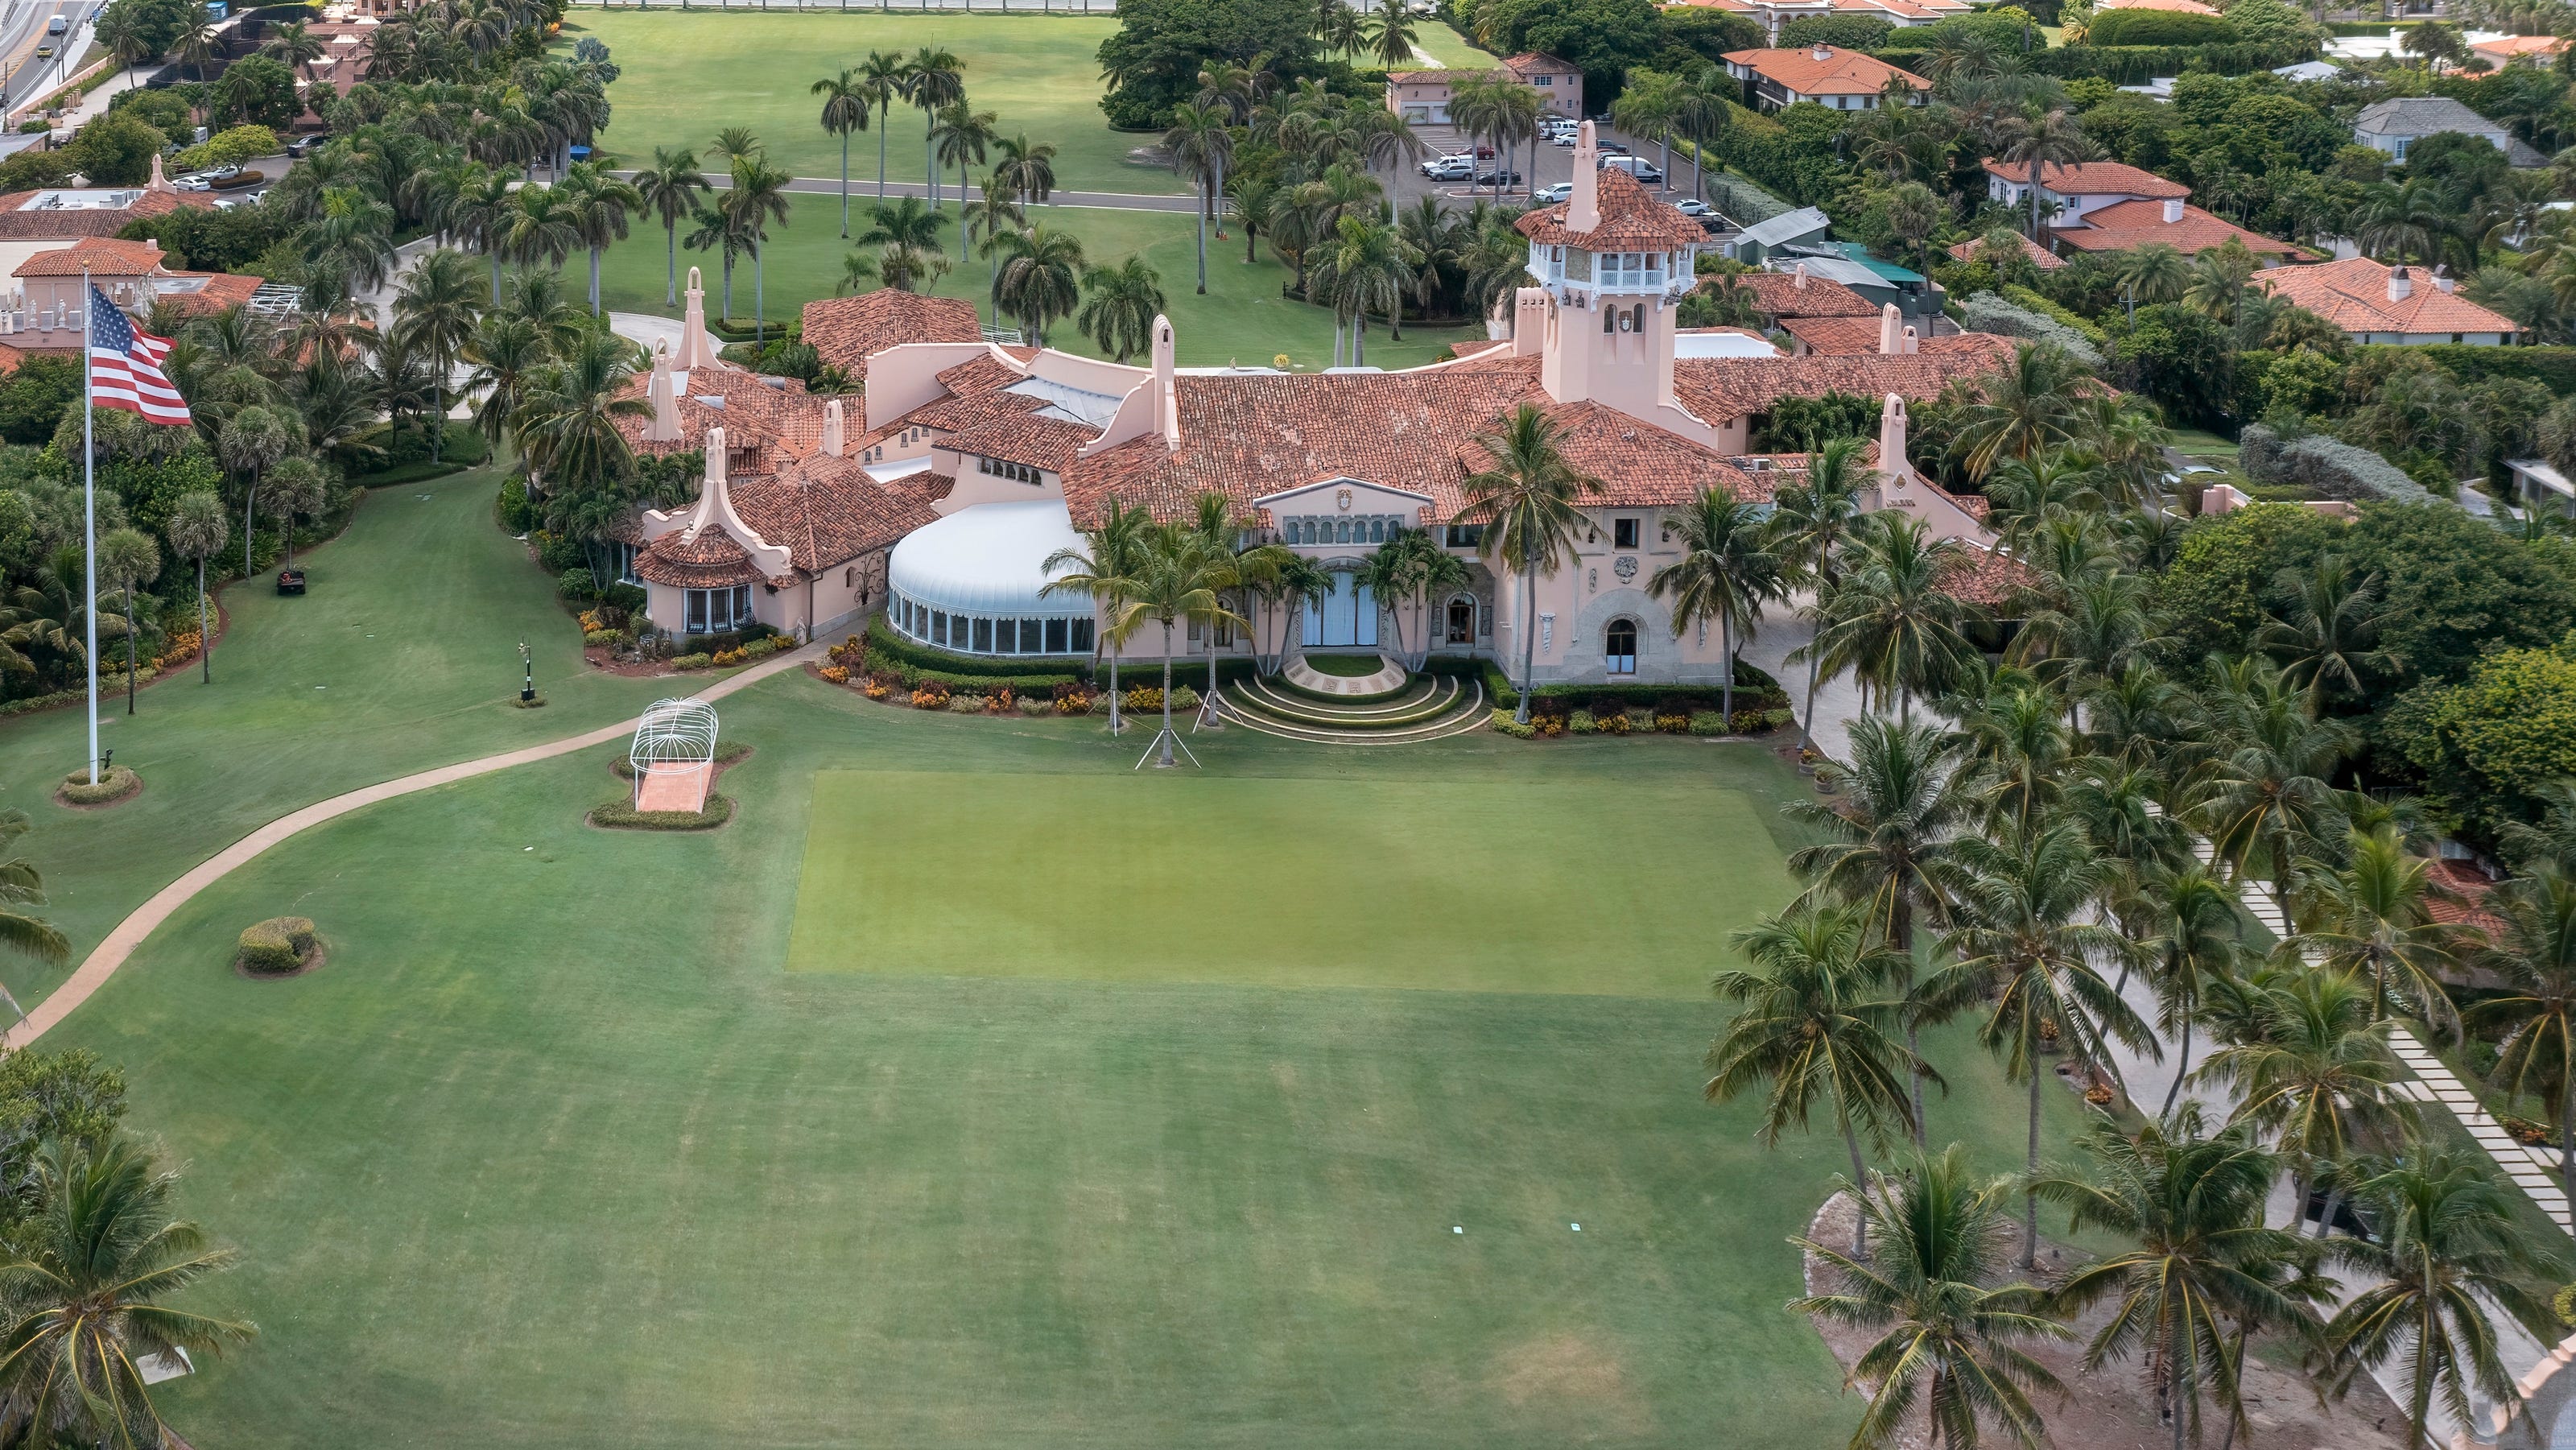 Trump's Mar-a-Lago: Aerial view of former president's Palm Beach club